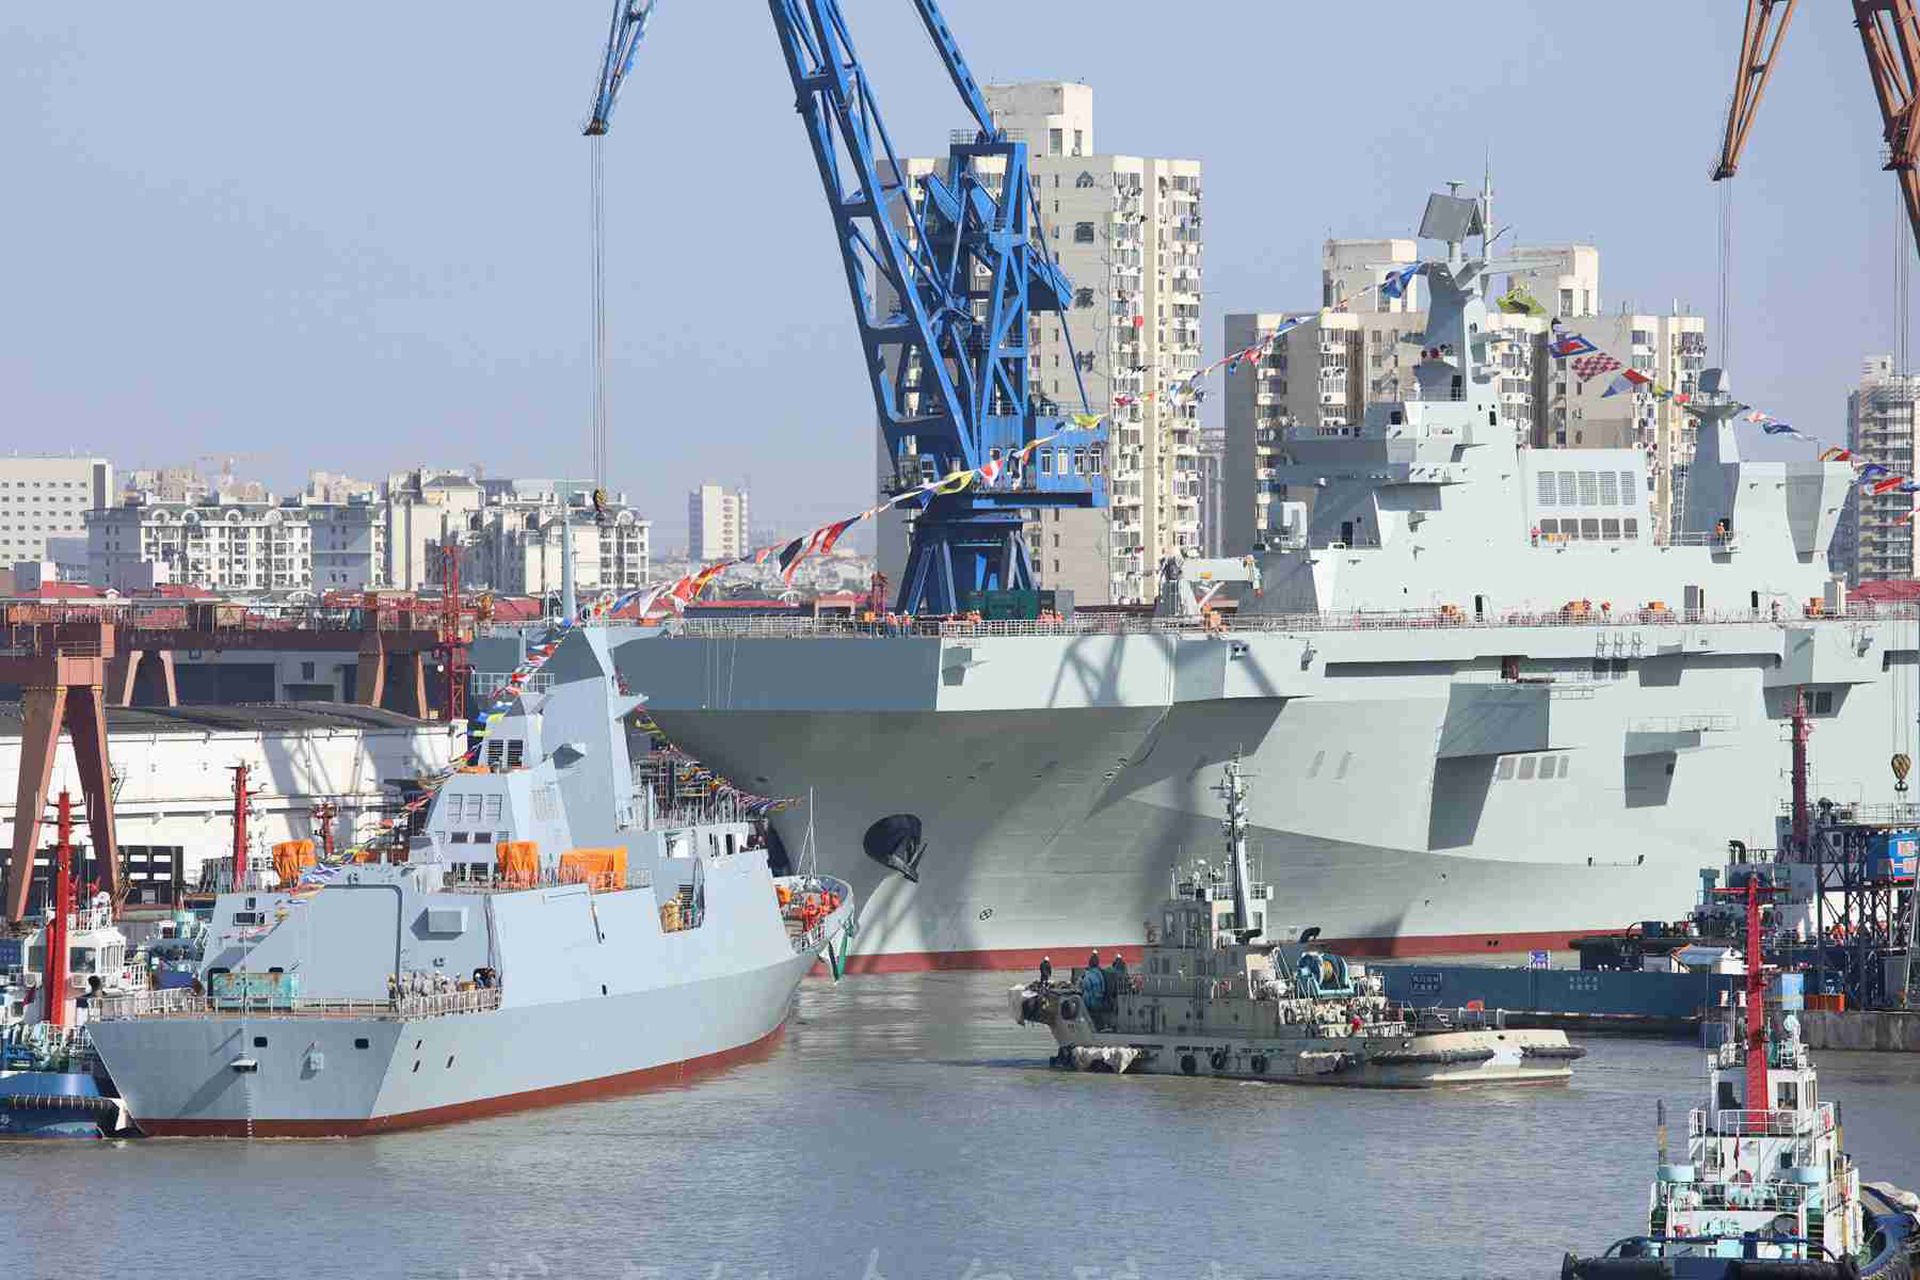 作为中国设计的大型两栖登陆作战舰艇，075拥有巨大的船舱，能够运输大量的两栖登陆作战武器。（微博@燃烧的哈尔科夫 ）